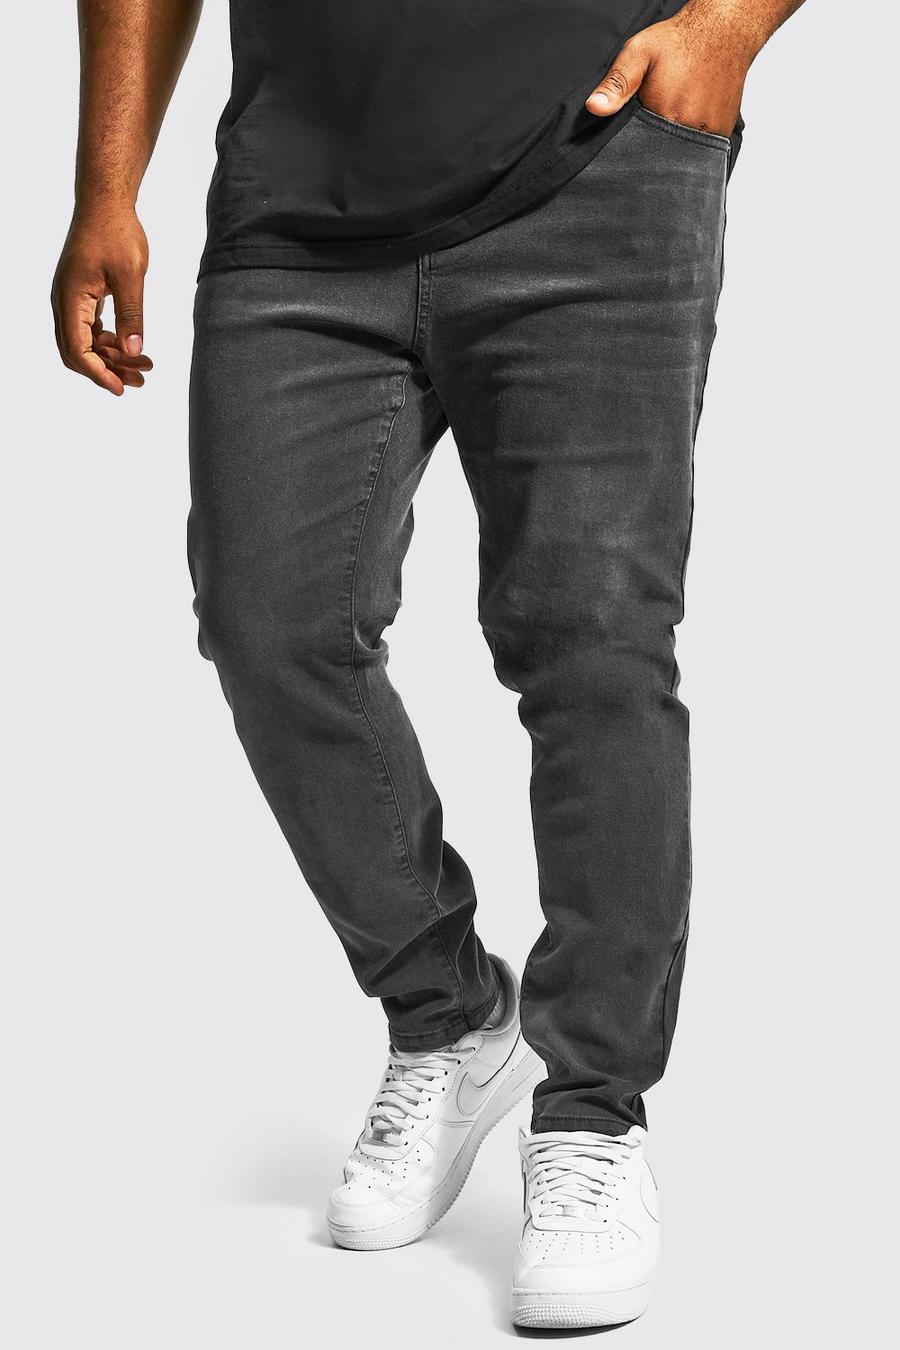 פחם gris סקיני ג'ינס נמתח בשילוב פוליאסטר ממוחזר, מידות גדולות